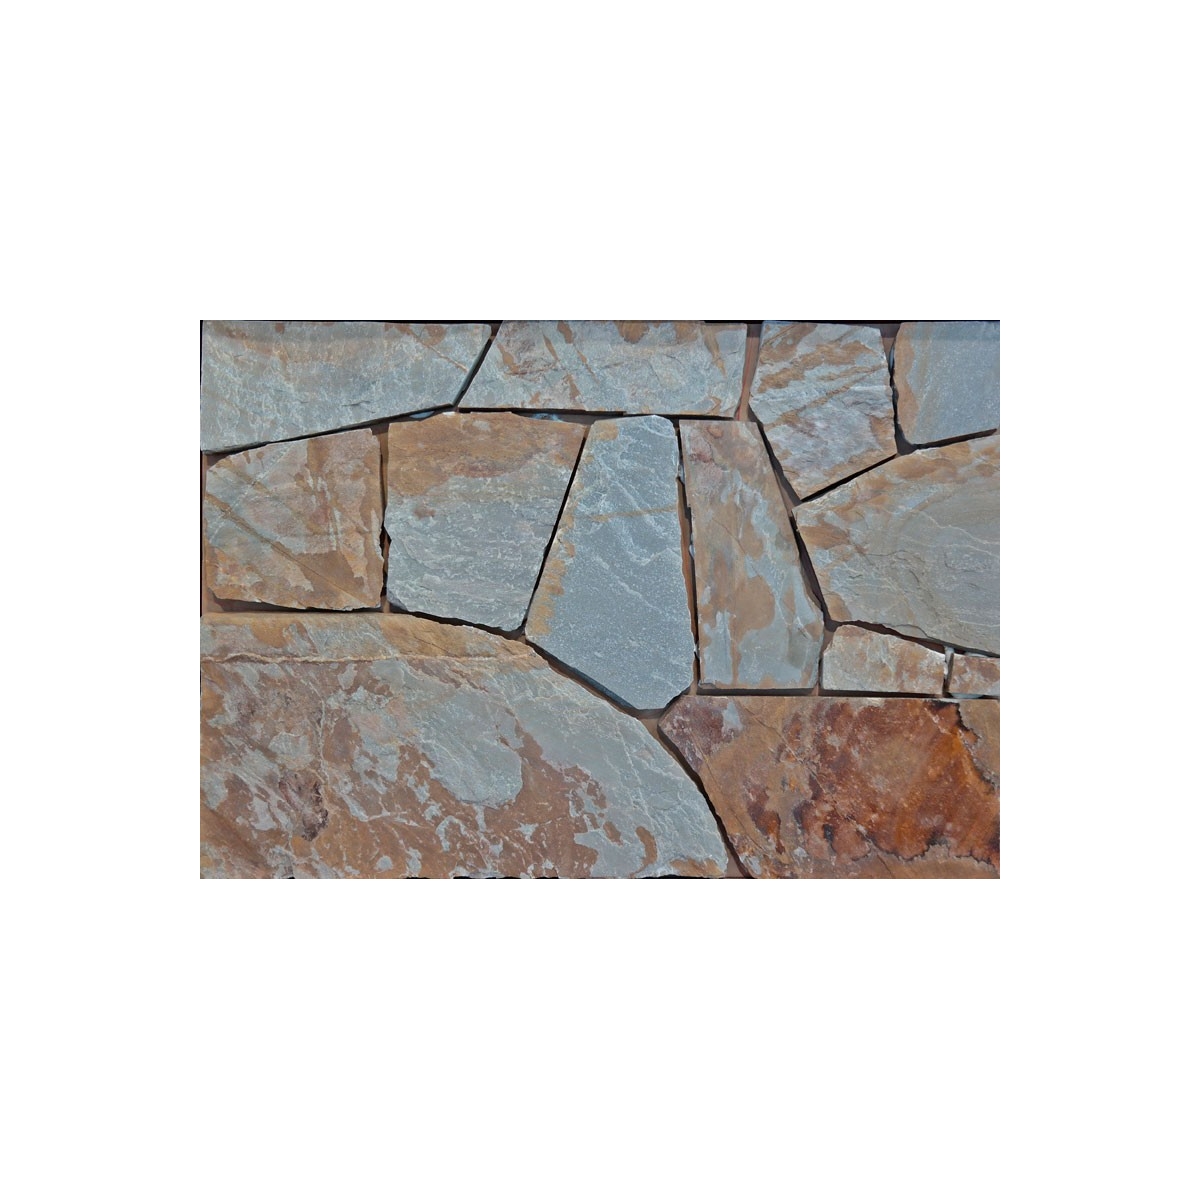 Quartzito Multicolor 1 m2 - Pedra Irregular - Marca Suministros Geser